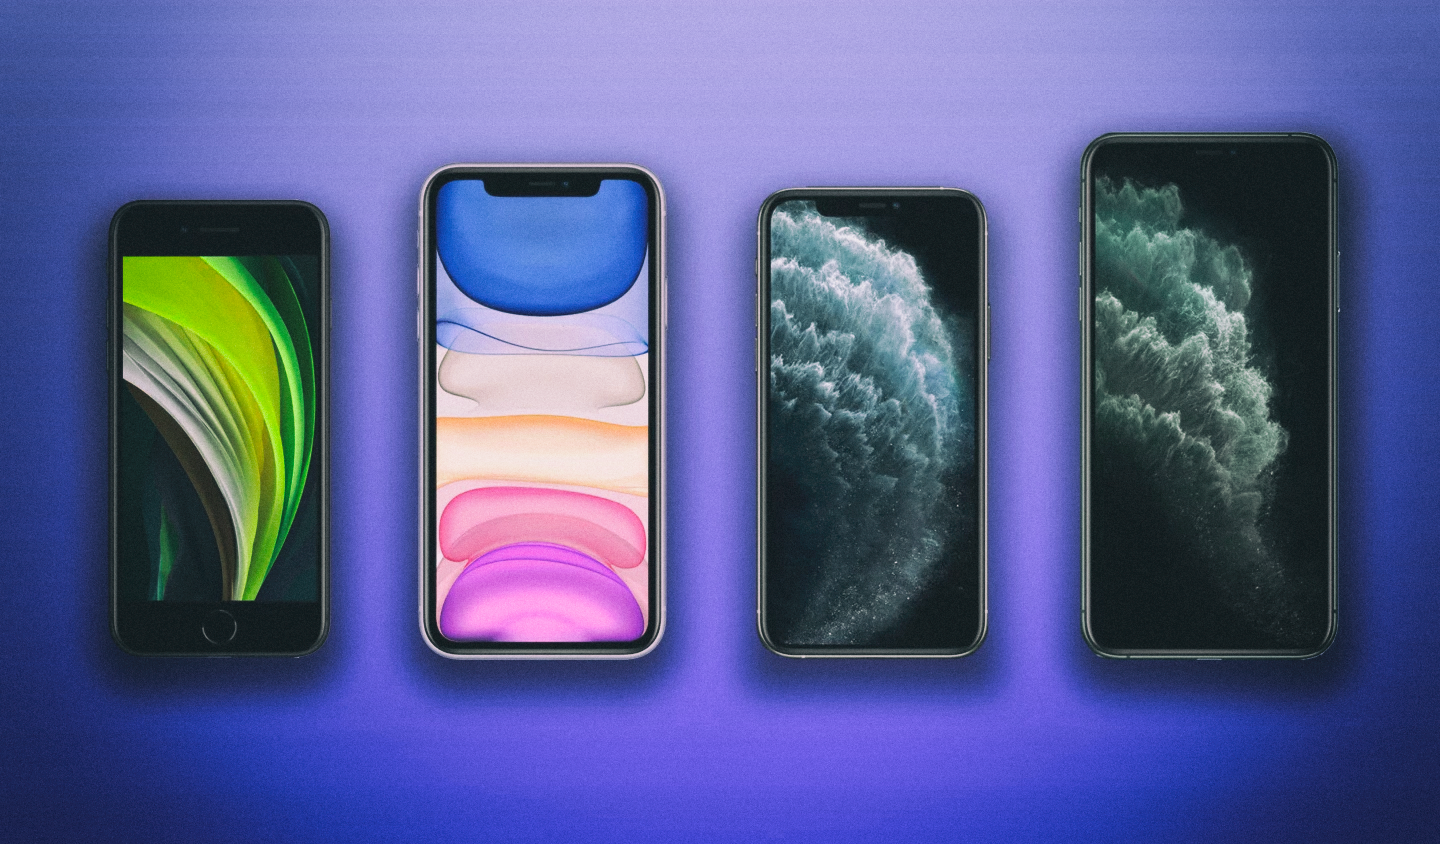 Сравниваем айфоны: iPhone SE 2020 против iPhone 11, 11 Pro и Pro Max